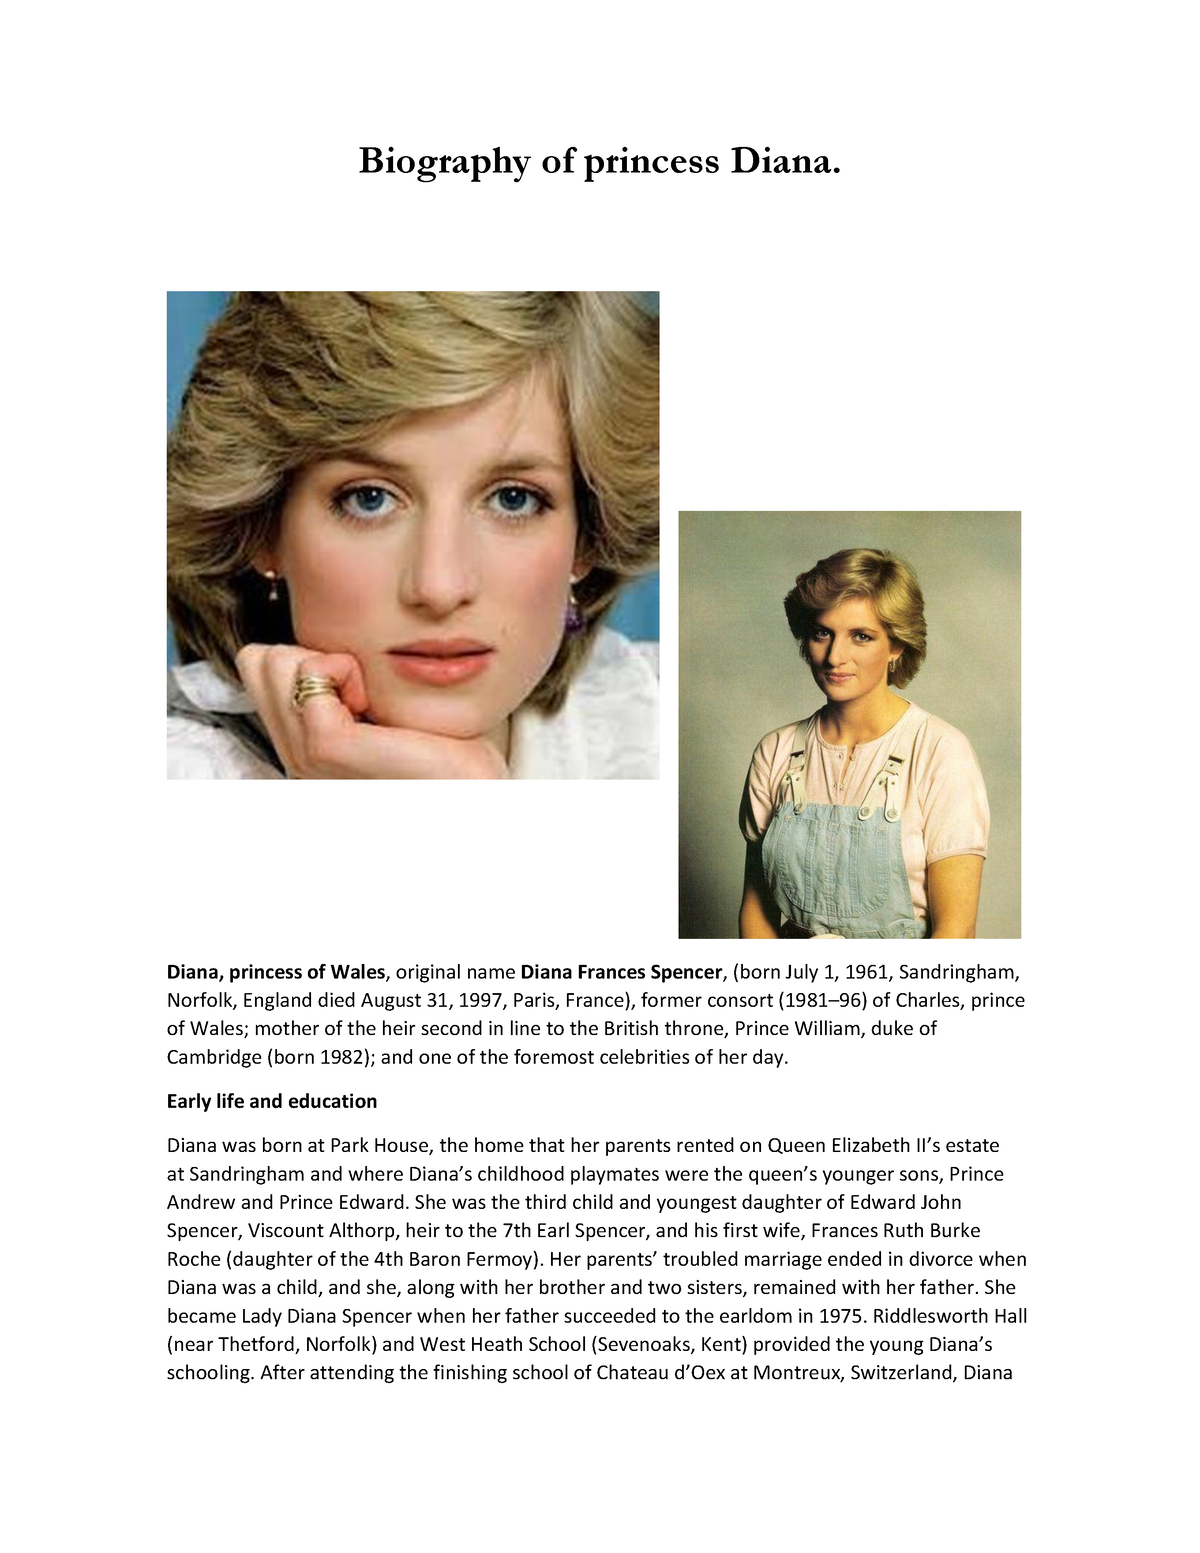 Biography of princess Diana - Diana, princess of Wales, original name ...